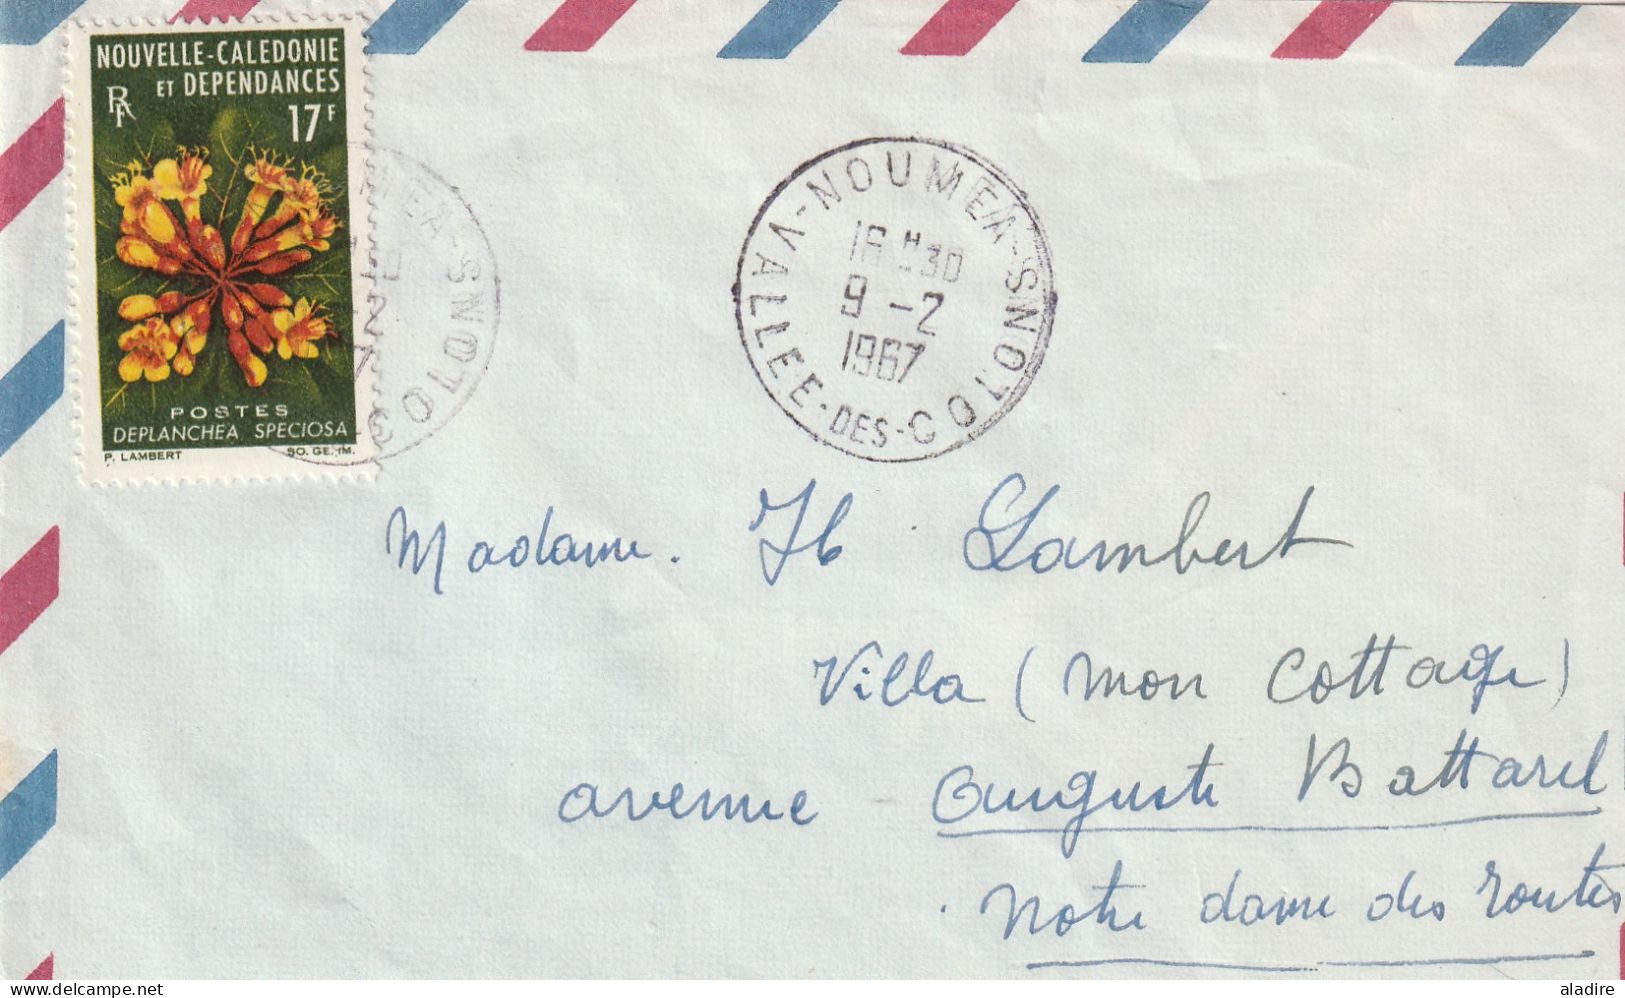 Nouvelle Calédonie - 1900 - 1977 - collection de 13 cartes et enveloppes - 26 scans